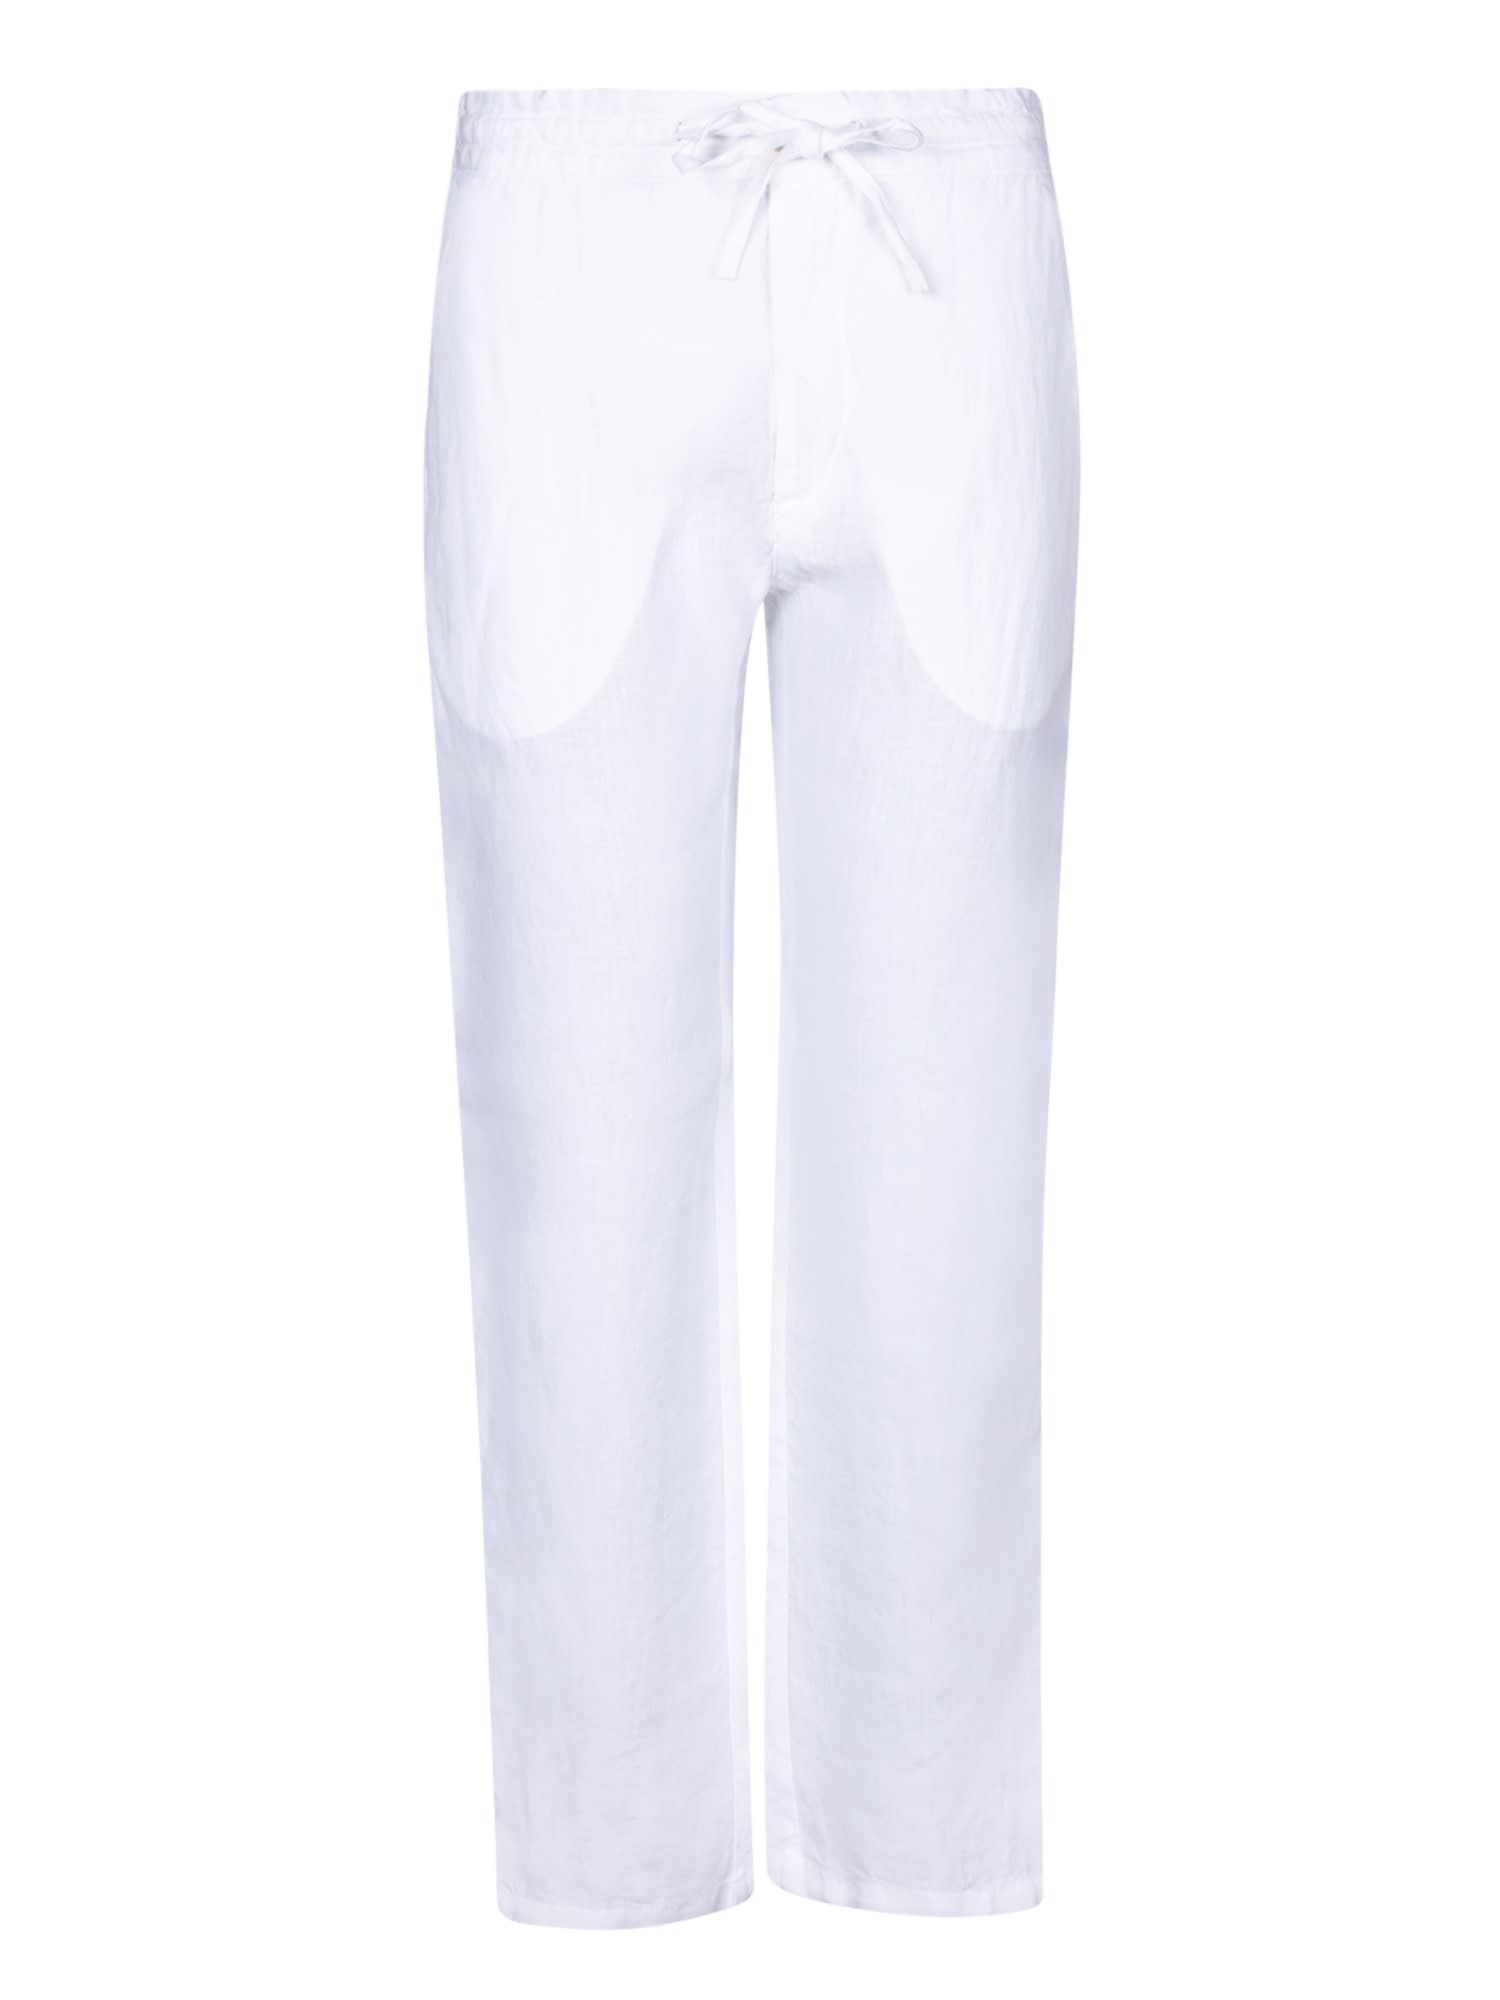 Shop 120% Lino White Linen Drawstring Trousers